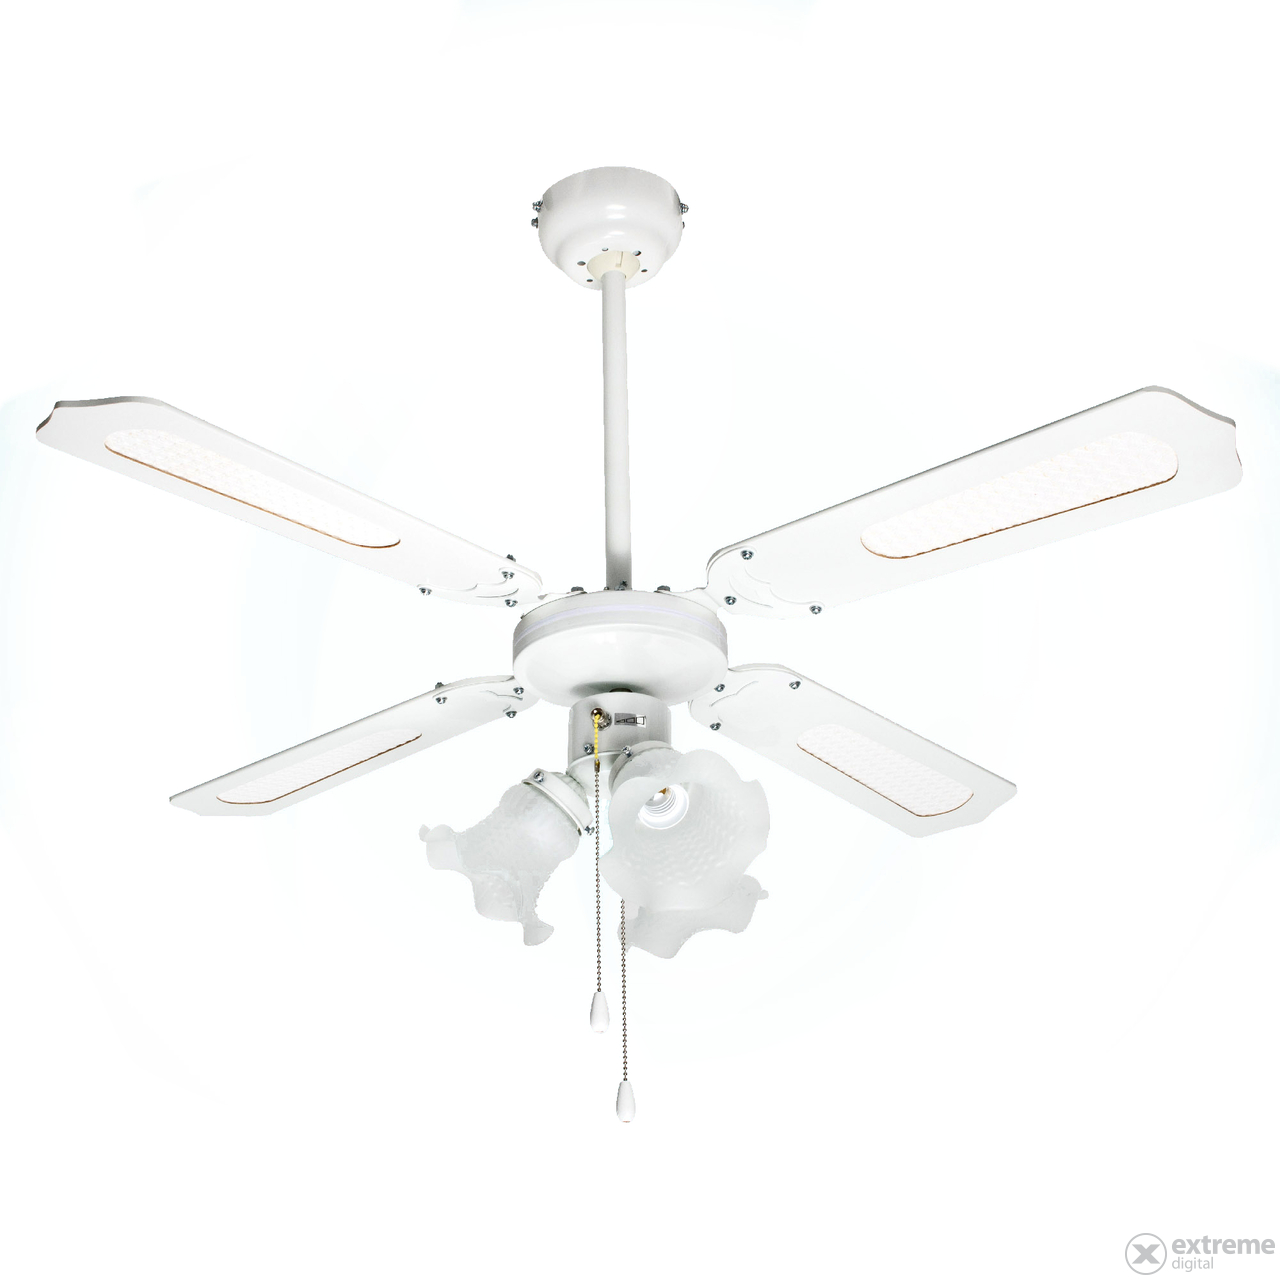 Home CF 1050 L stropni ventilator, bijeli, 50 W